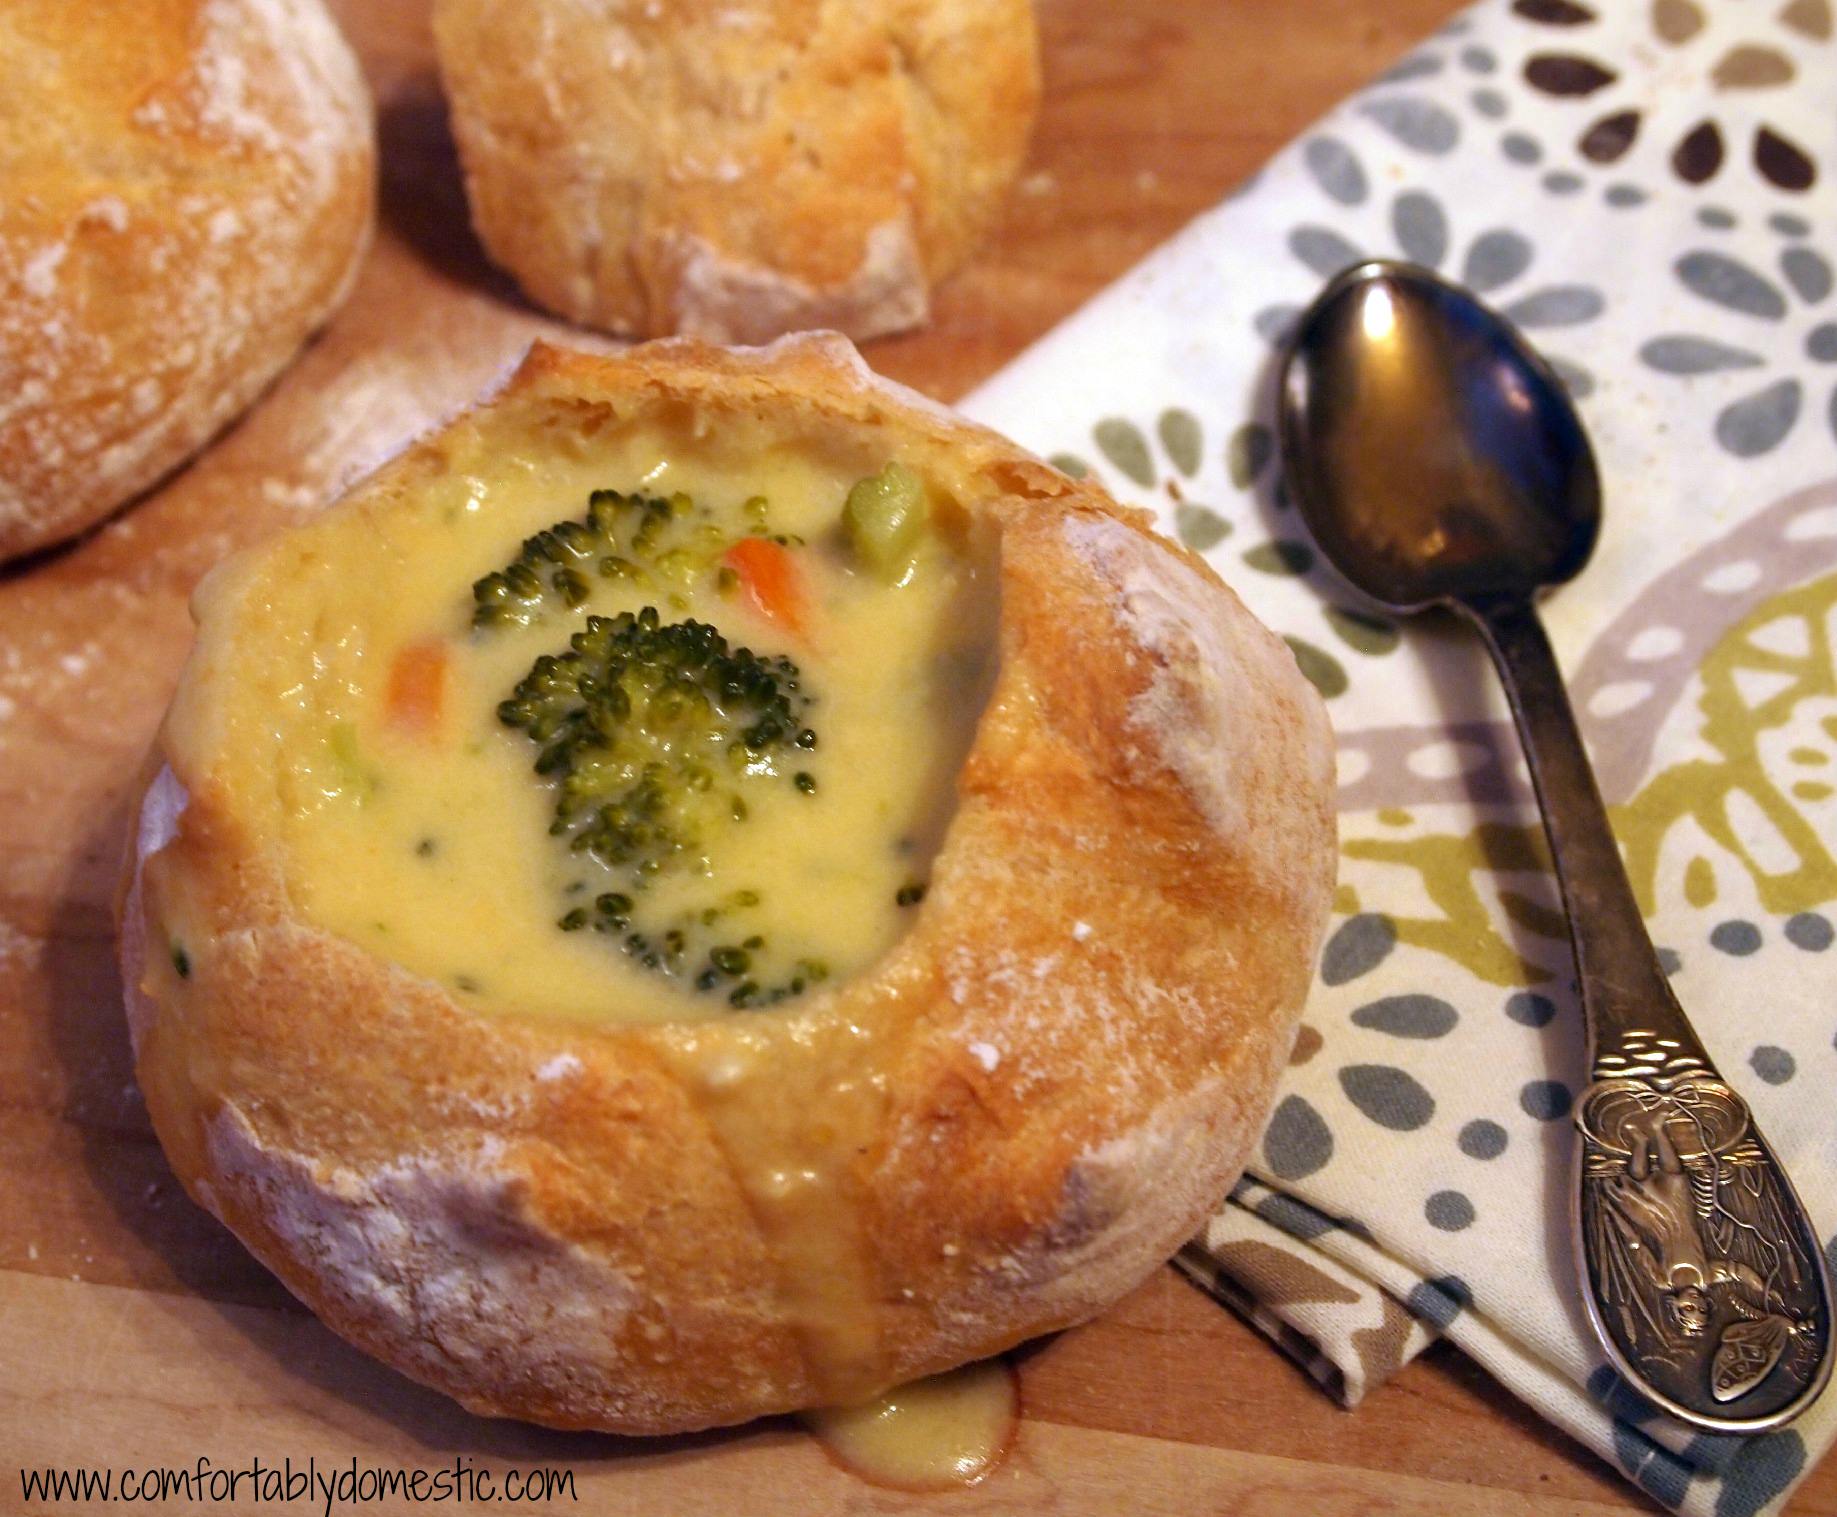 Homemade Broccoli Cheddar Soup via ComfortablyDomestic.com